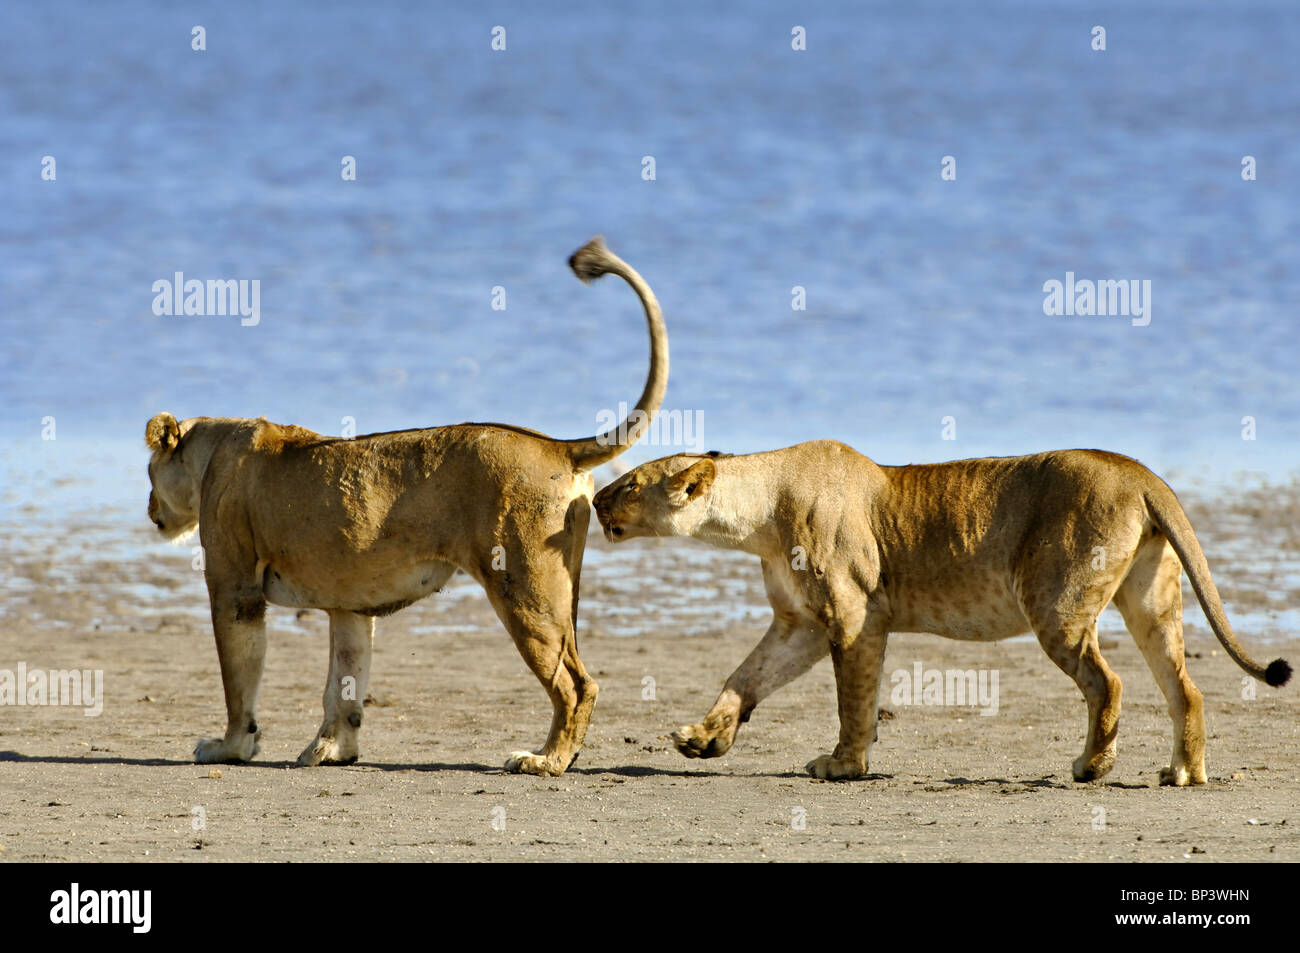 Two lionesses Panthera leo female sniffs a female's genital area Ndutu Ngorongoro Tanzania Stock Photo